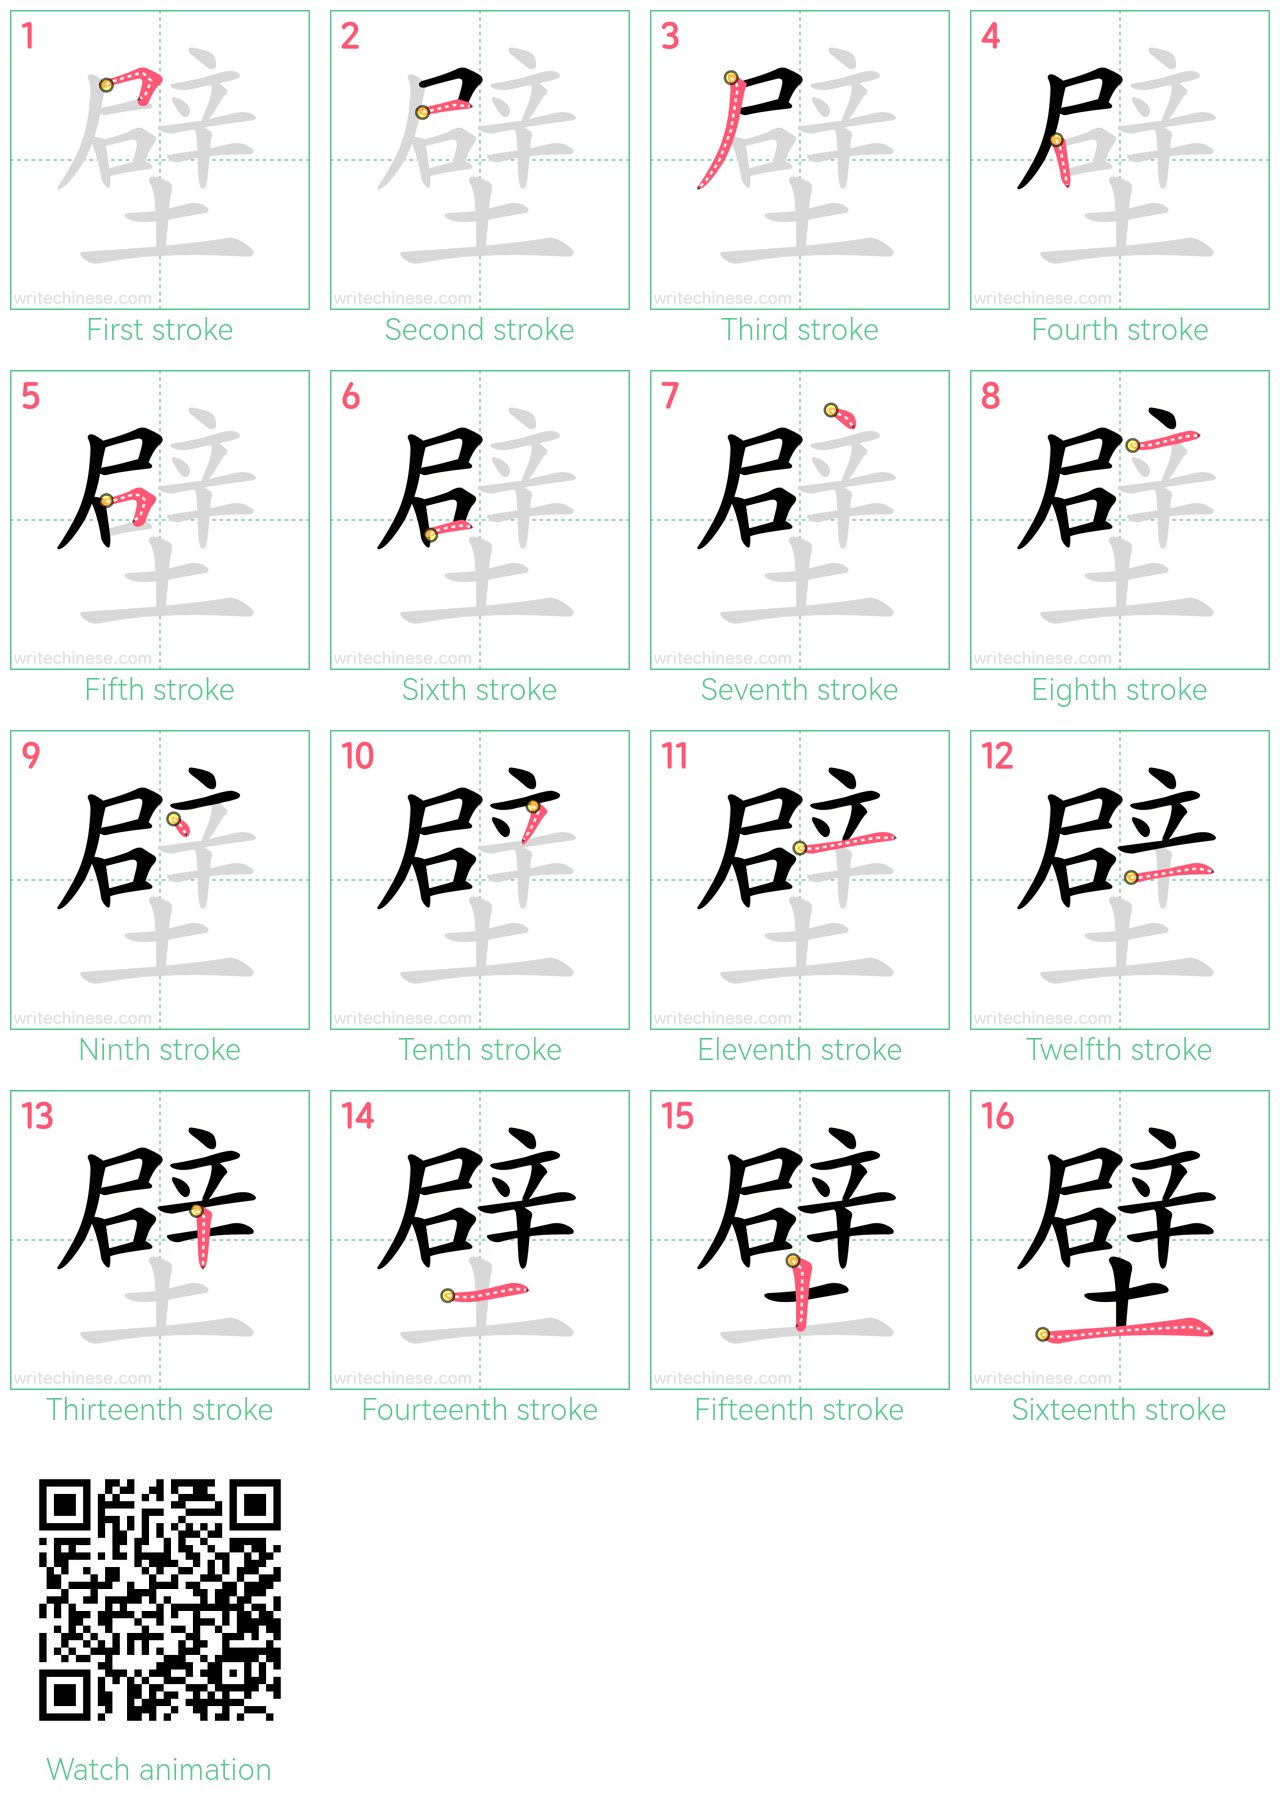 壁 step-by-step stroke order diagrams